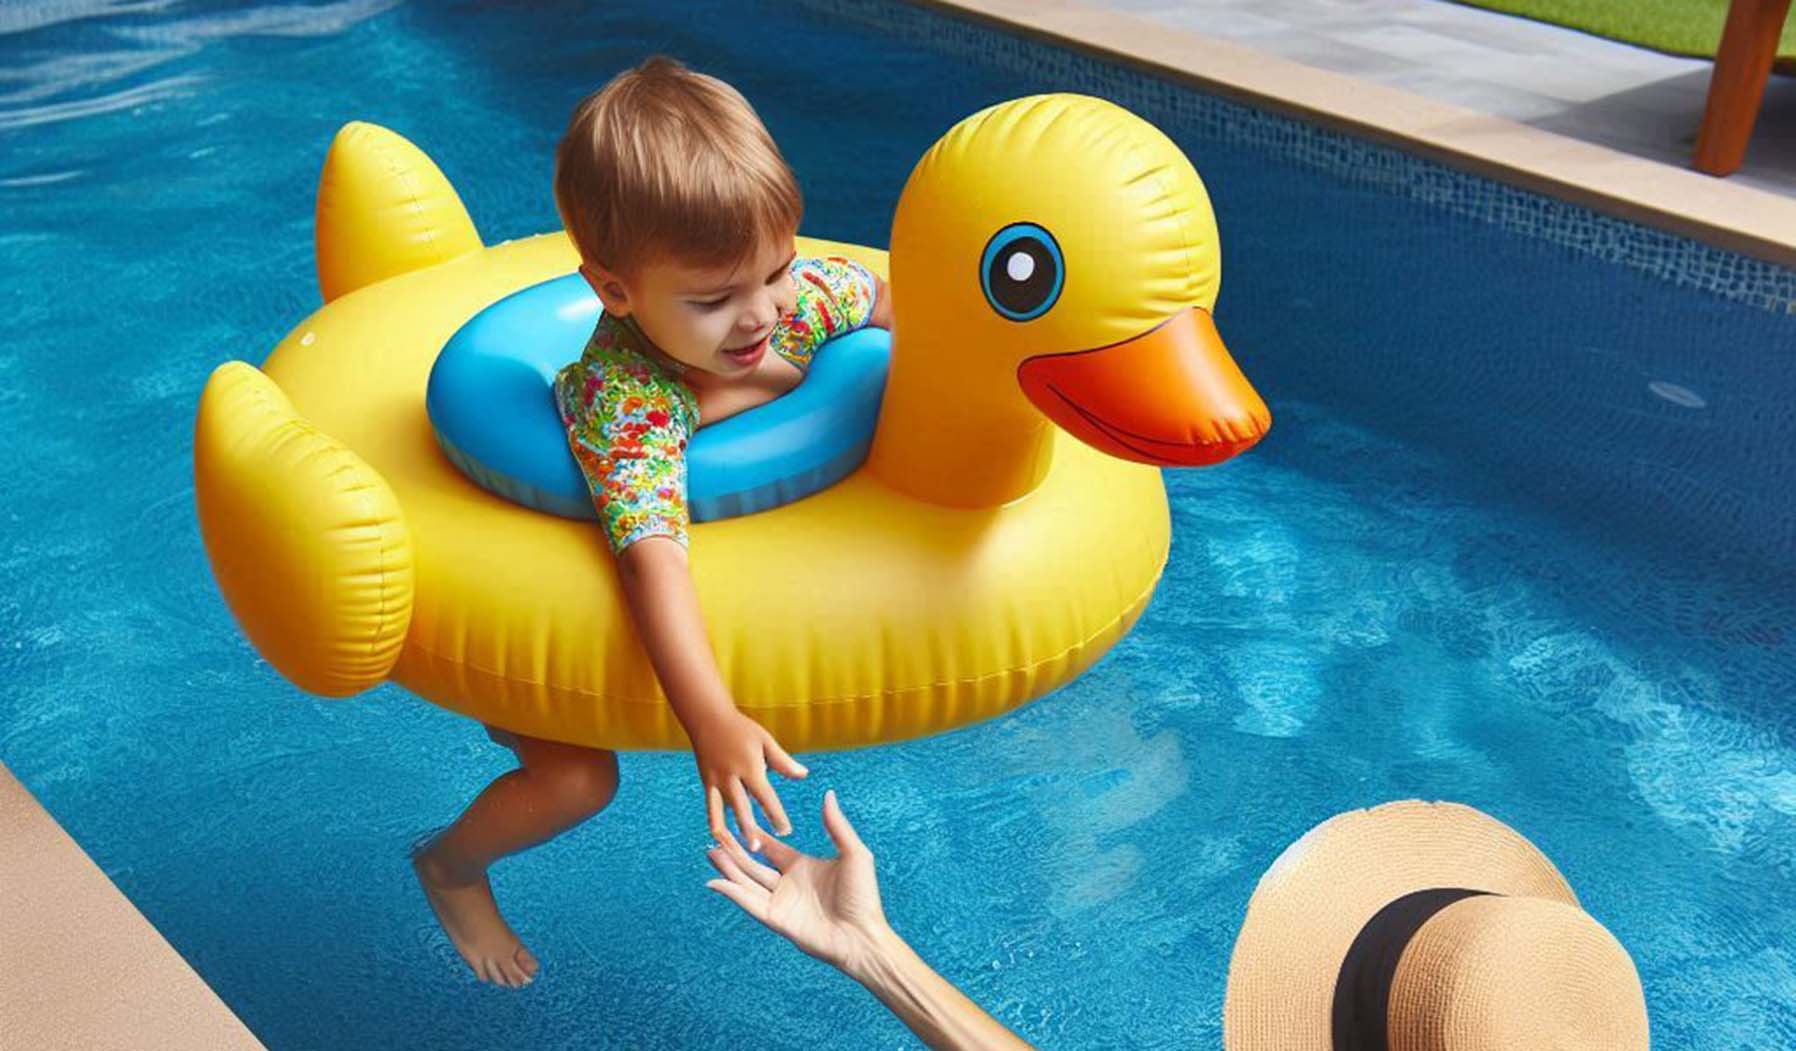 Policja ostrzega przed zostawianiem dzieci samych w ogrodowych basenach – ryzyko utonięcia